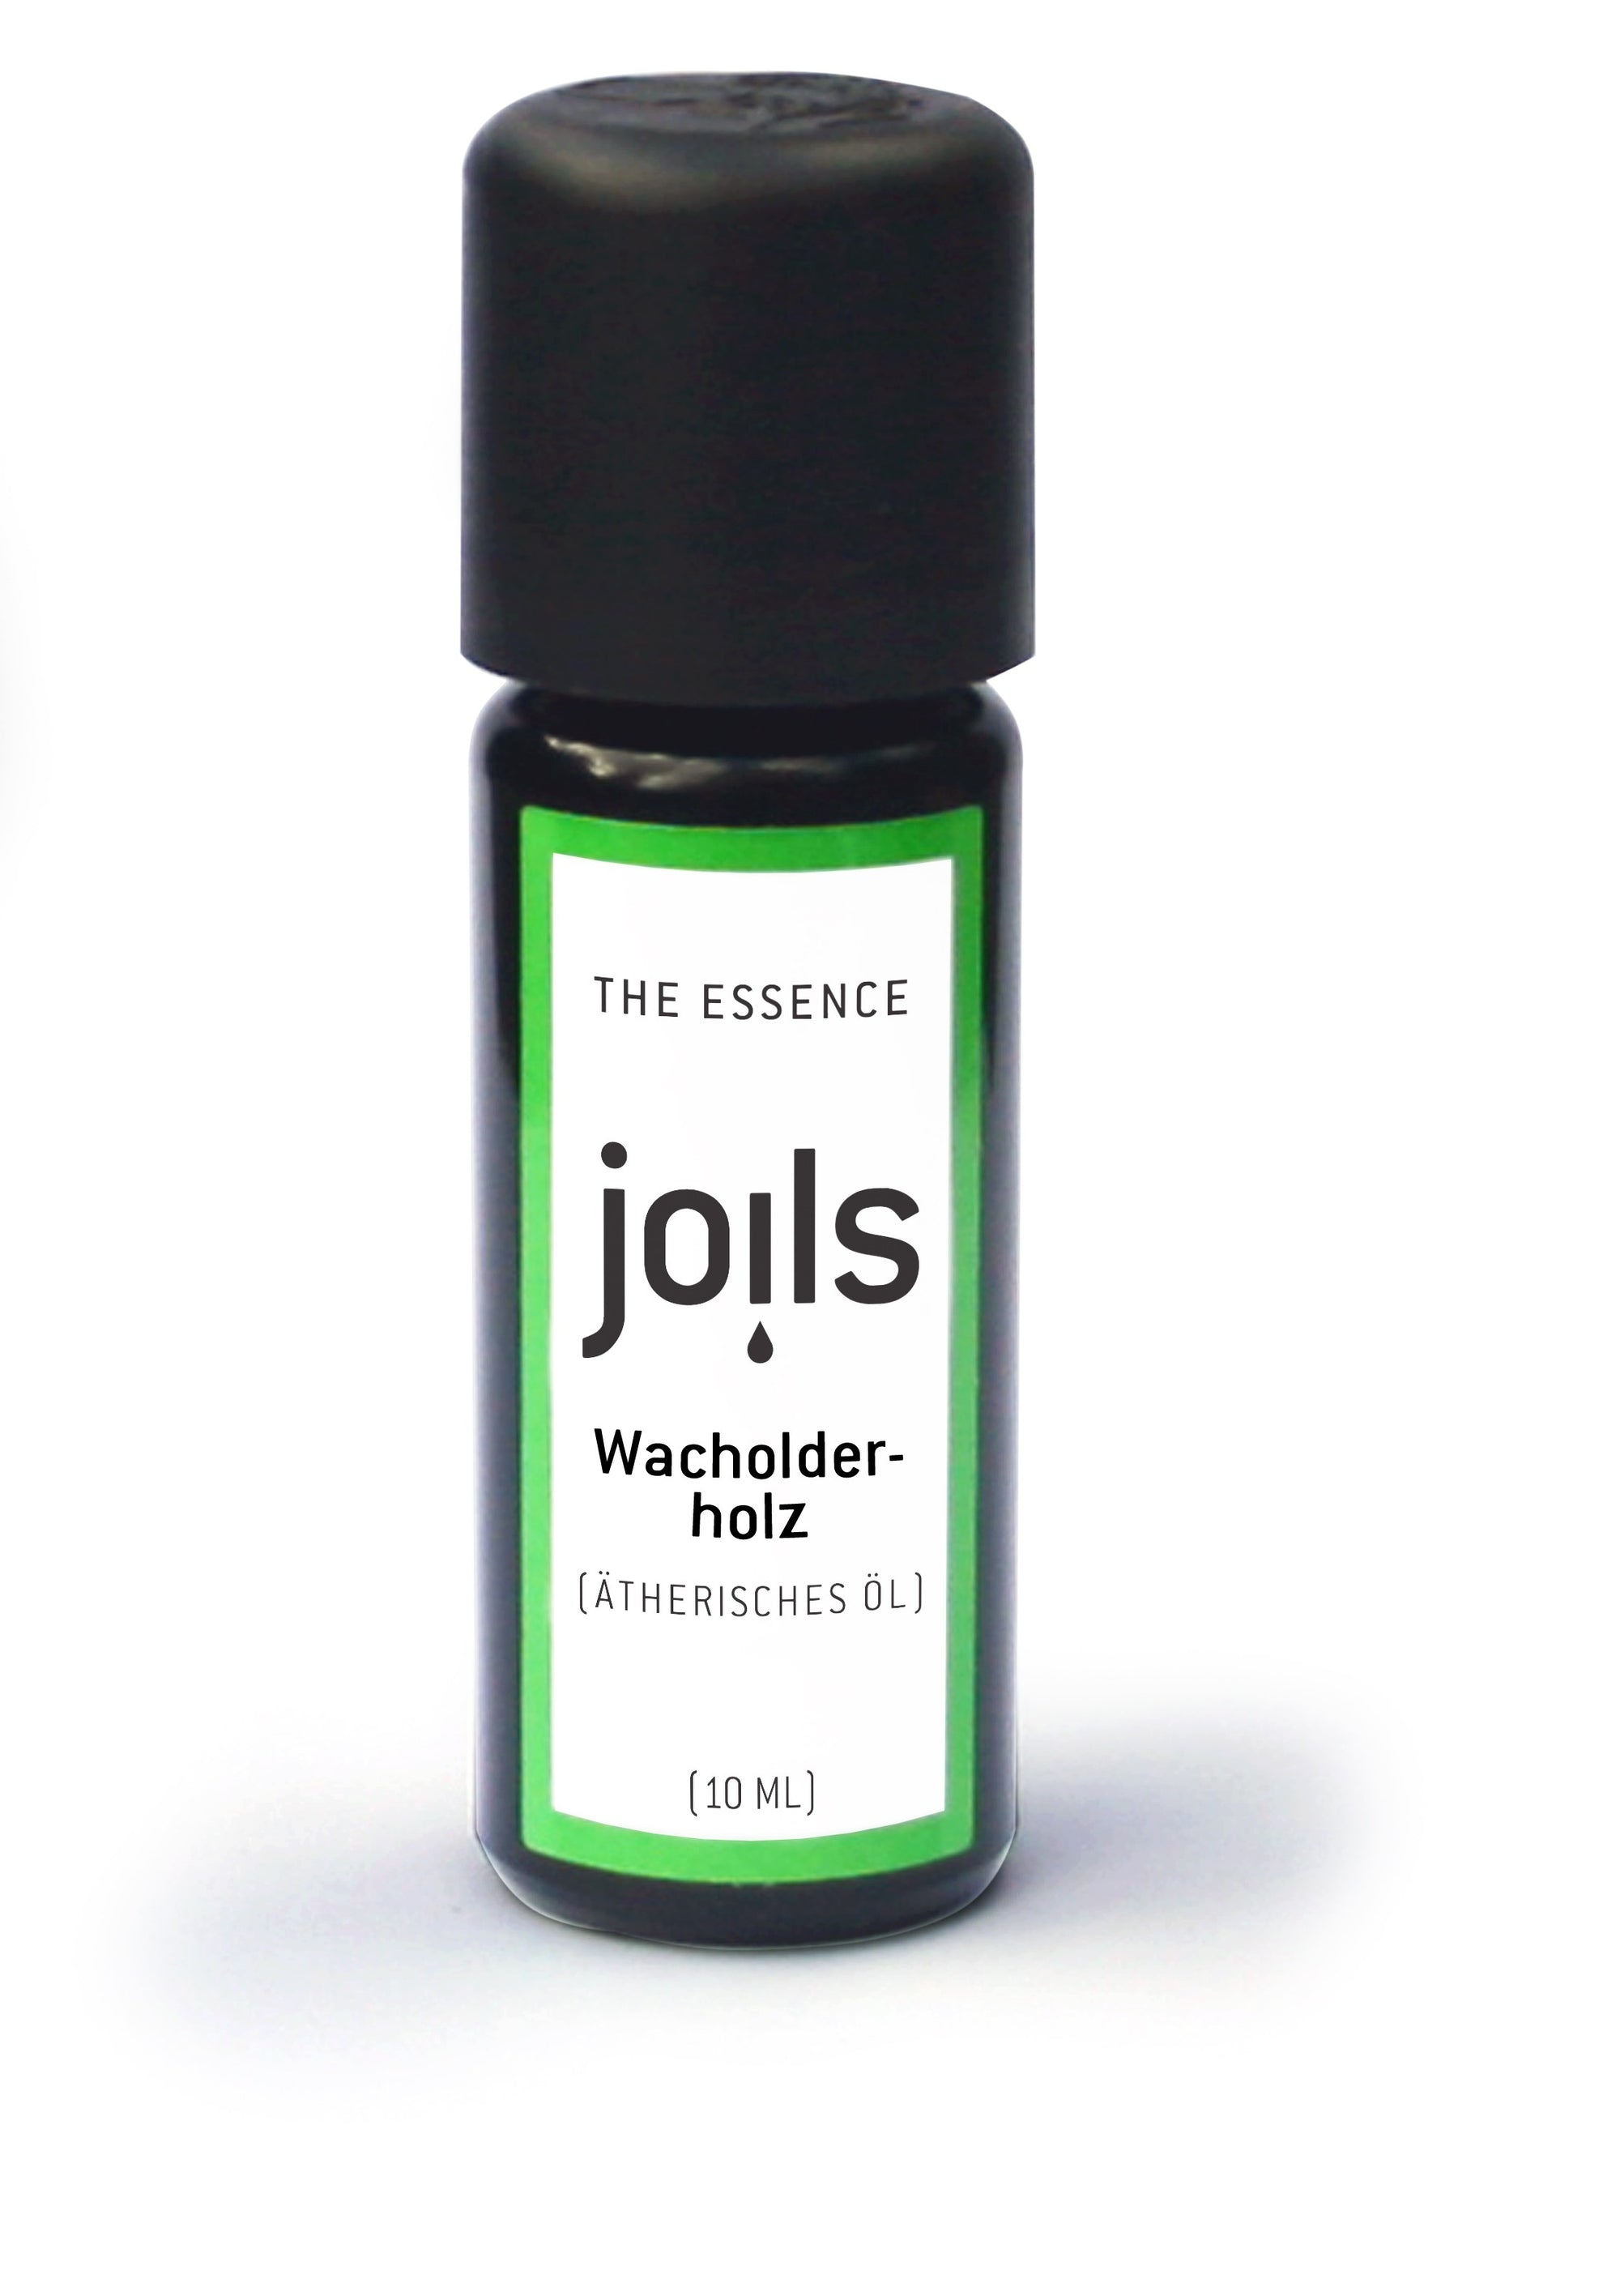 WACHOLDERHOLZ 10ml - Joils